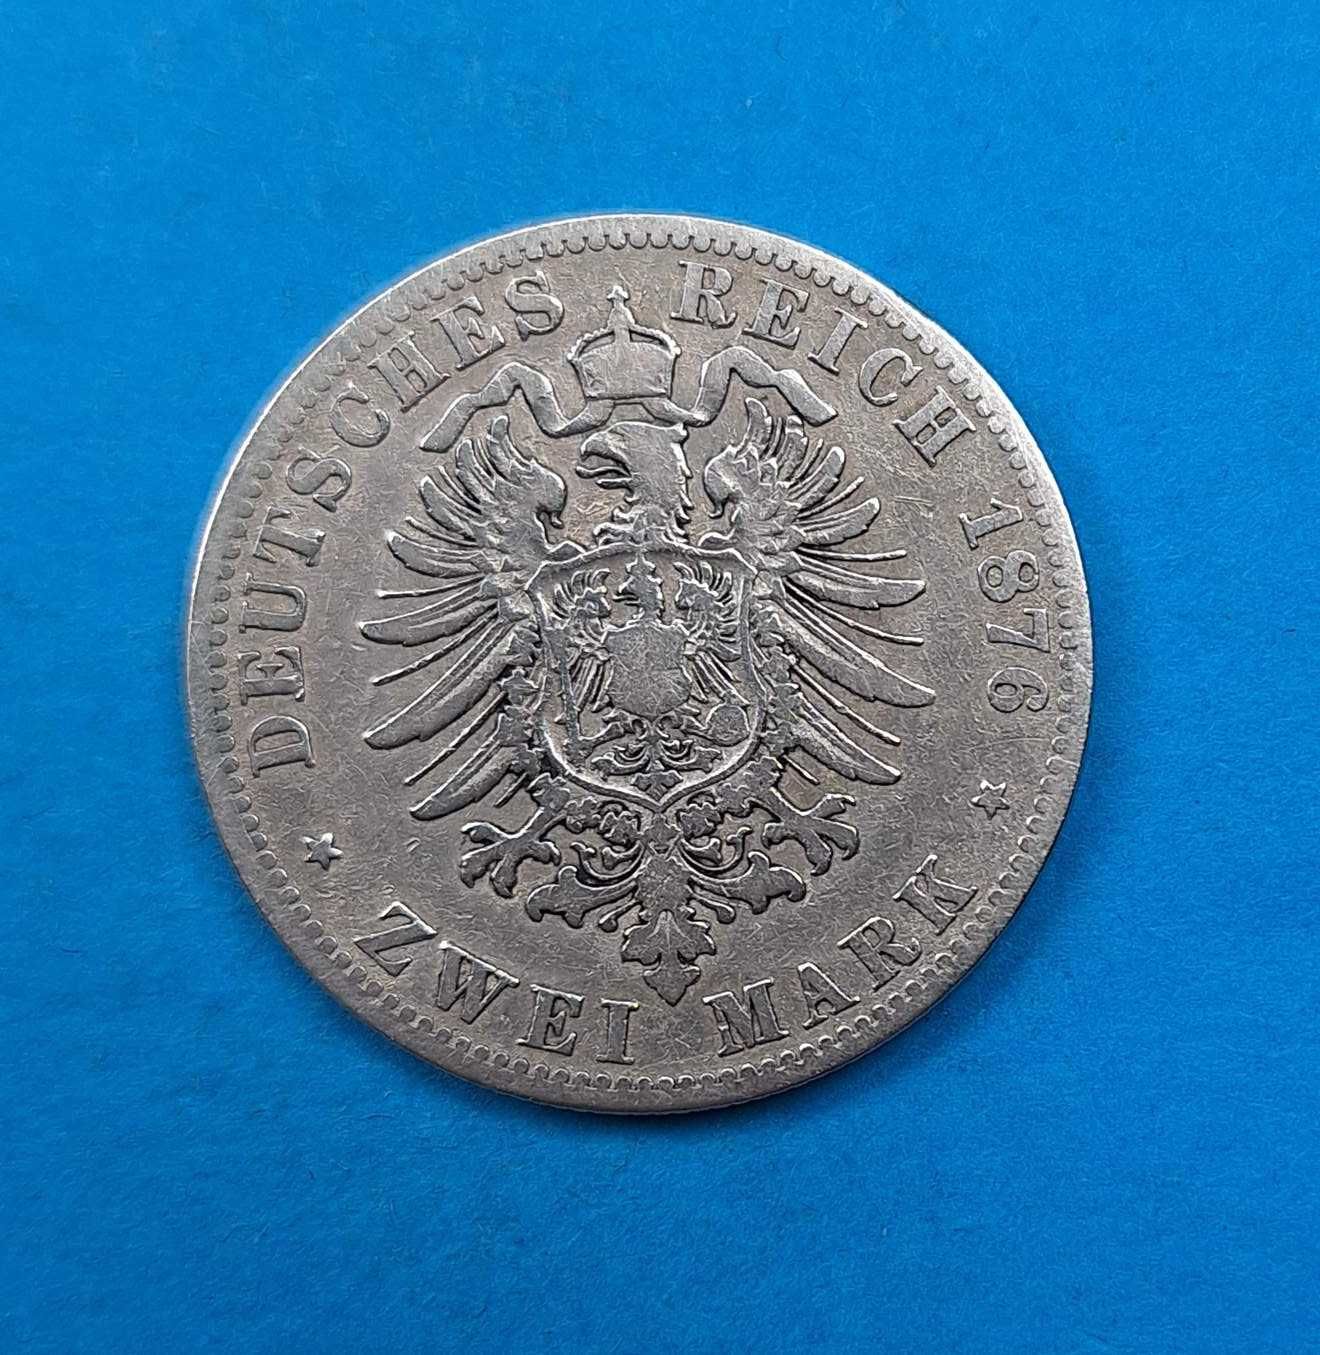 Niemcy Cesarstwo, Prusy 2 marki 1876 A, Wilhelm I, srebro 0,900